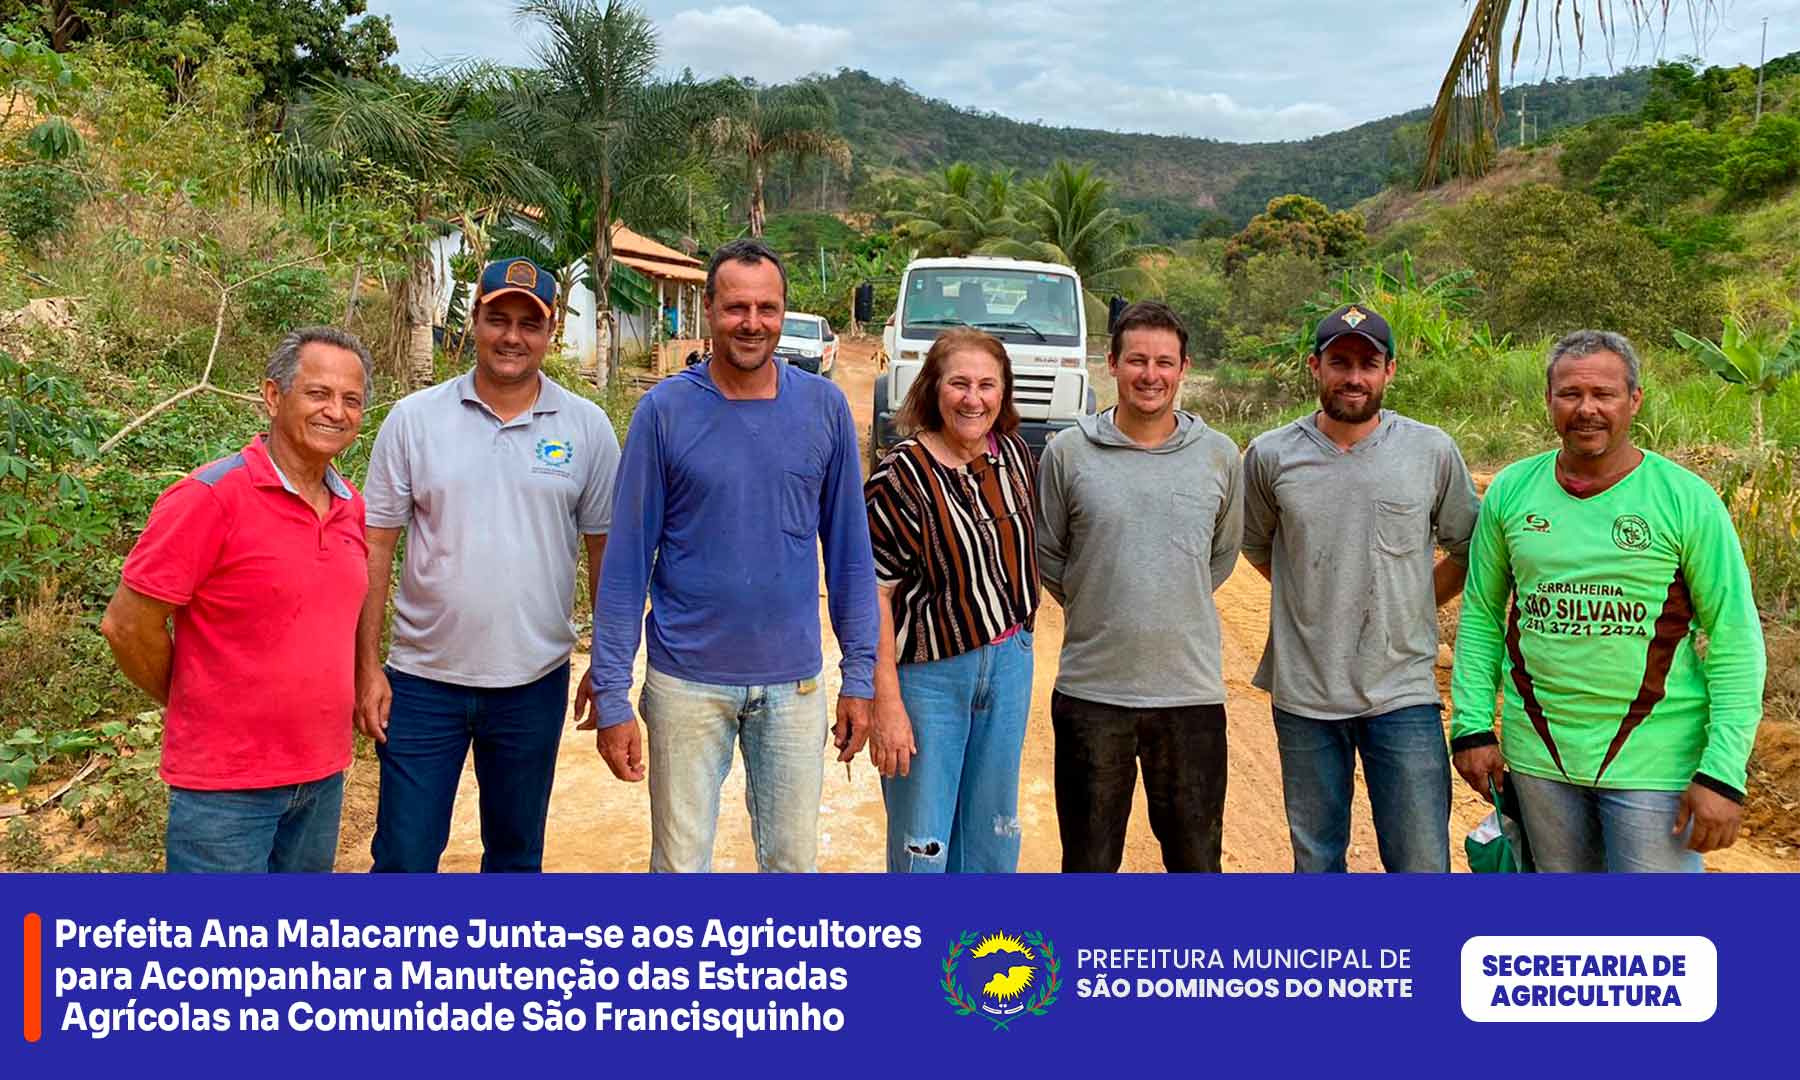 Prefeita Ana Malacarne Junta-se aos Agricultores para Acompanhar a Manutenção das Estradas Agrícolas na Comunidade São Francisquinho